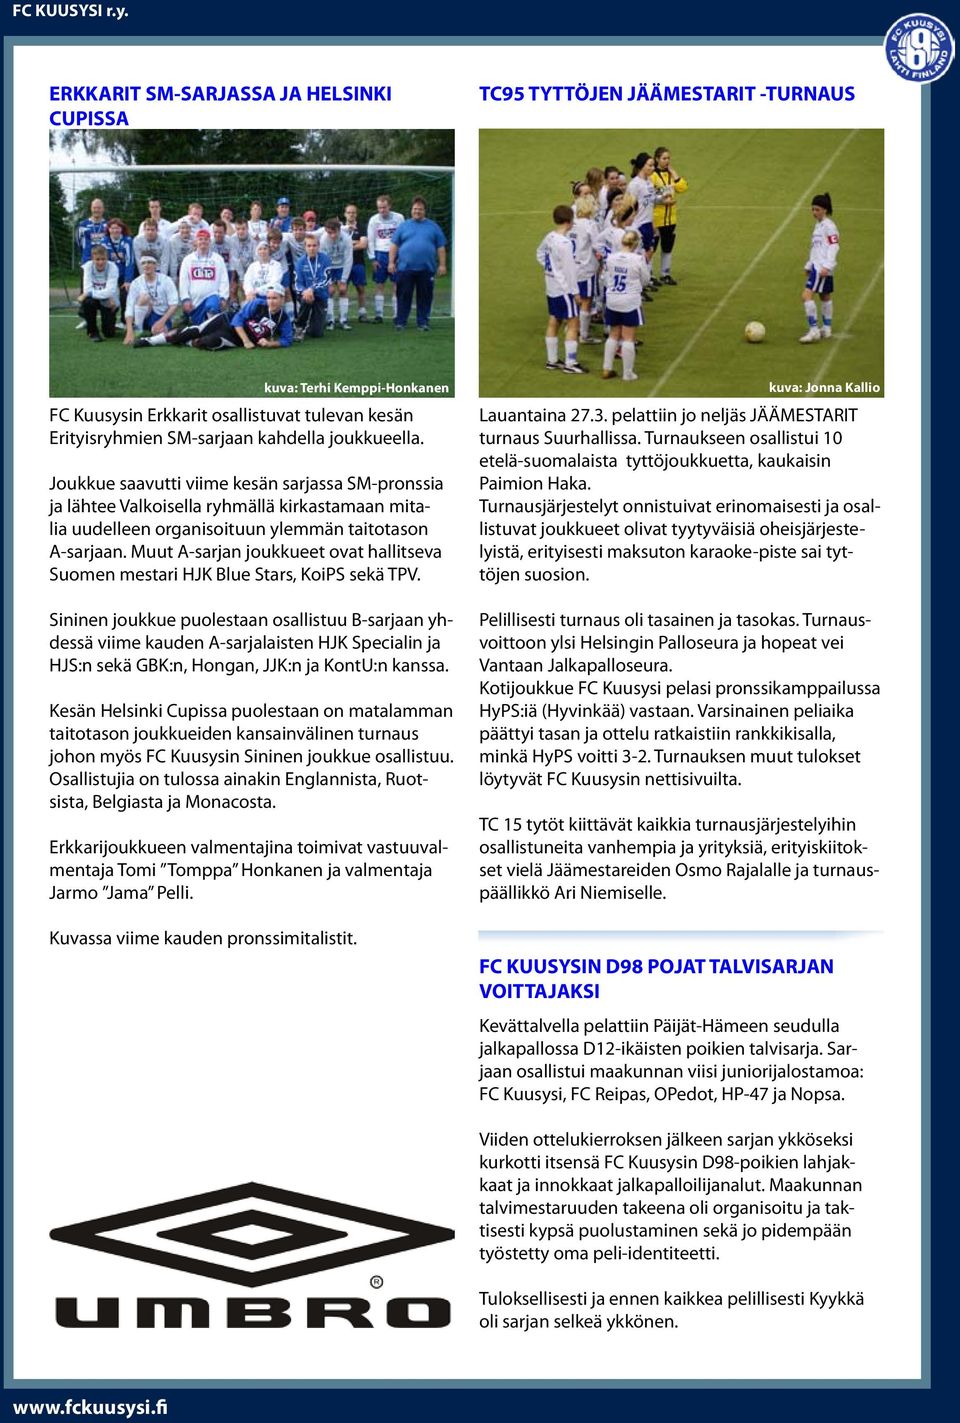 Muut A-sarjan joukkueet ovat hallitseva Suomen mestari HJK Blue Stars, KoiPS sekä TPV.